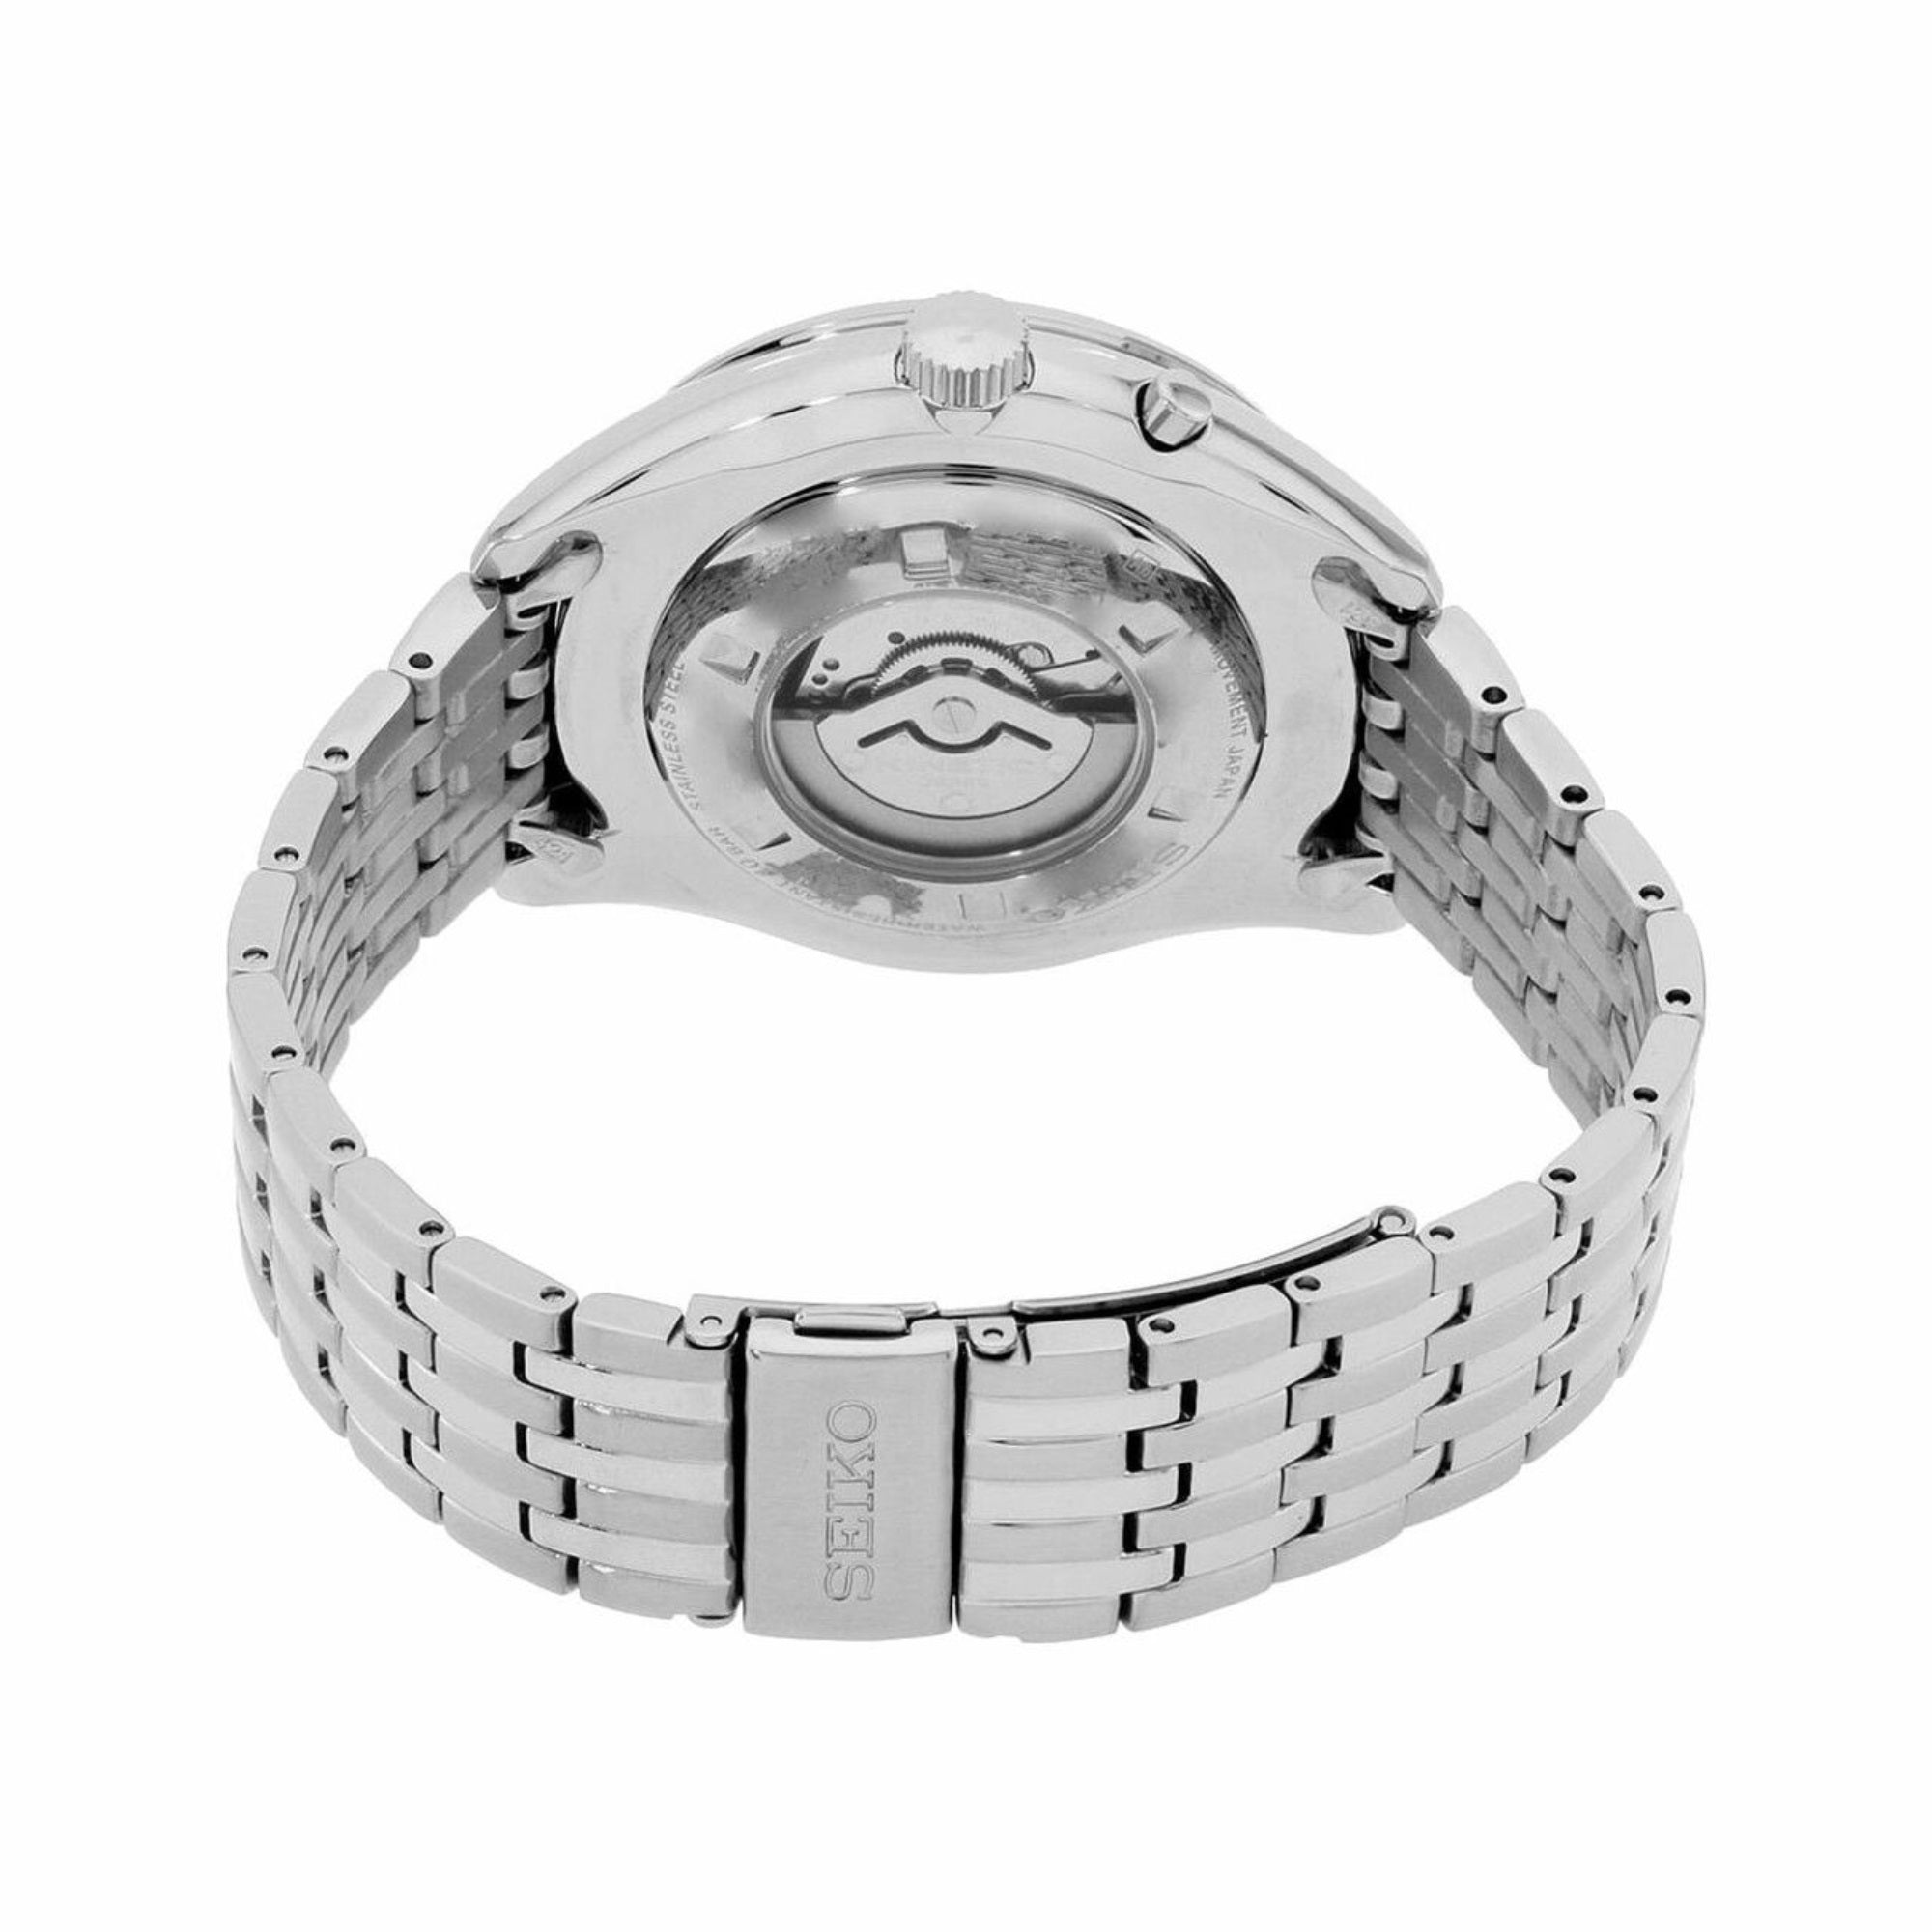 Seiko Quartz Analog Display Men's Watch SRN055 - Obsessions Jewellery